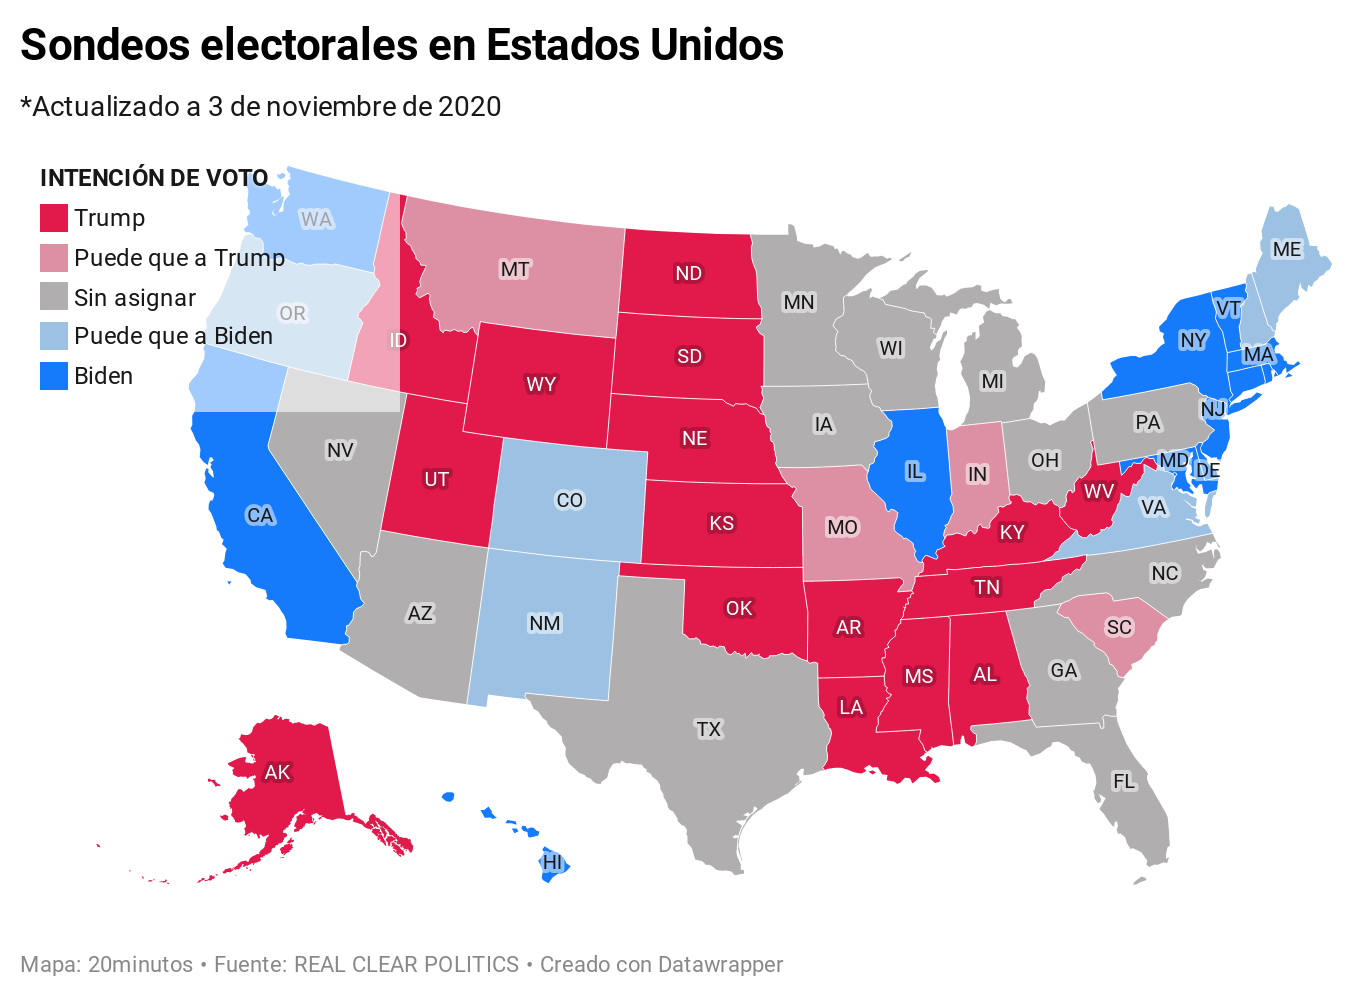 cómo van las encuestas para las elecciones presidenciales en estados